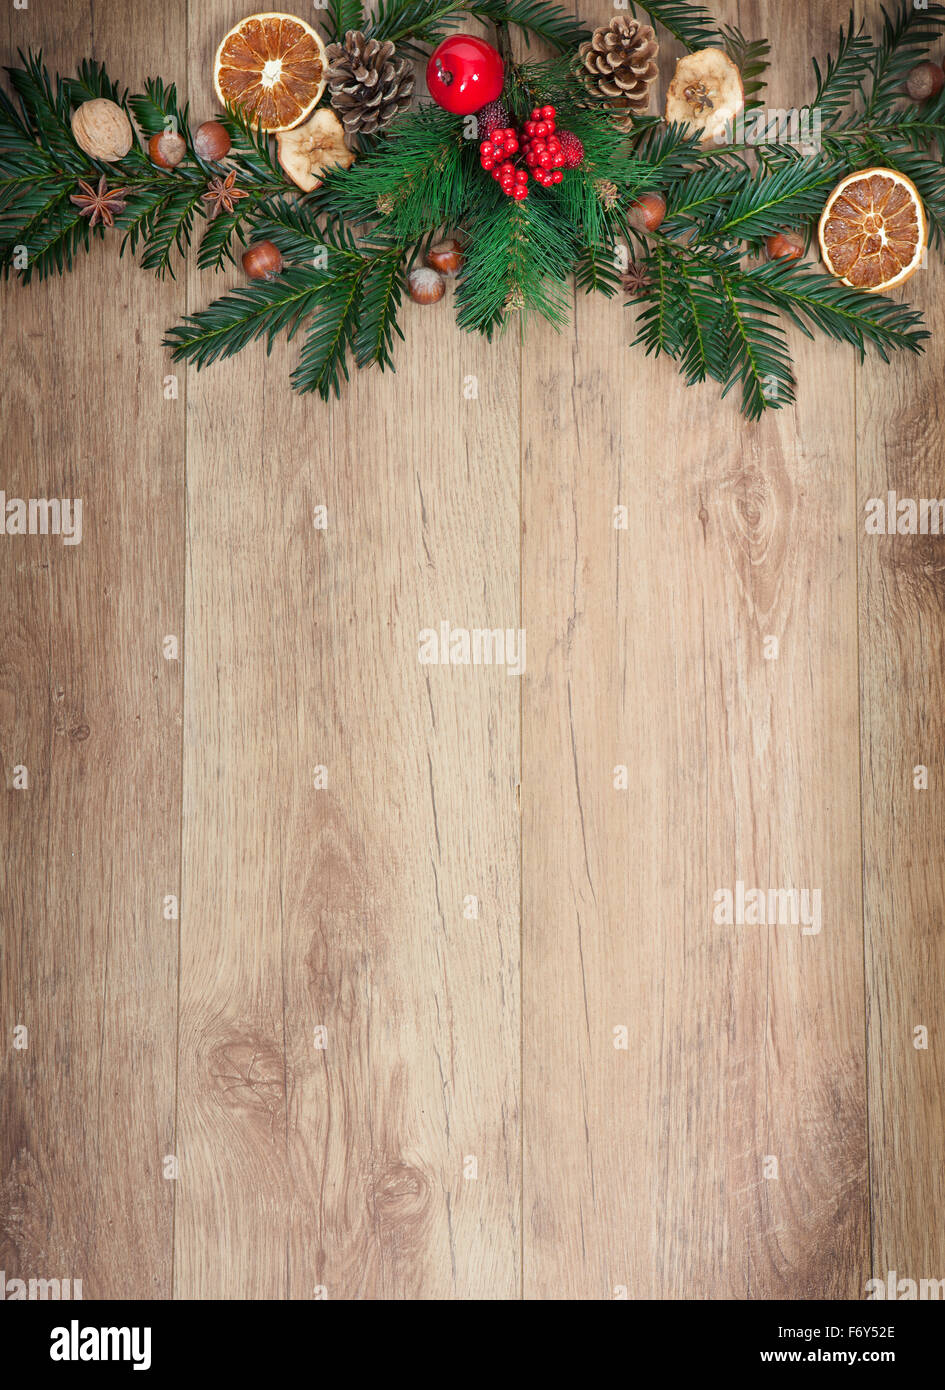 Un fond de bois avec des décorations de Noël Banque D'Images